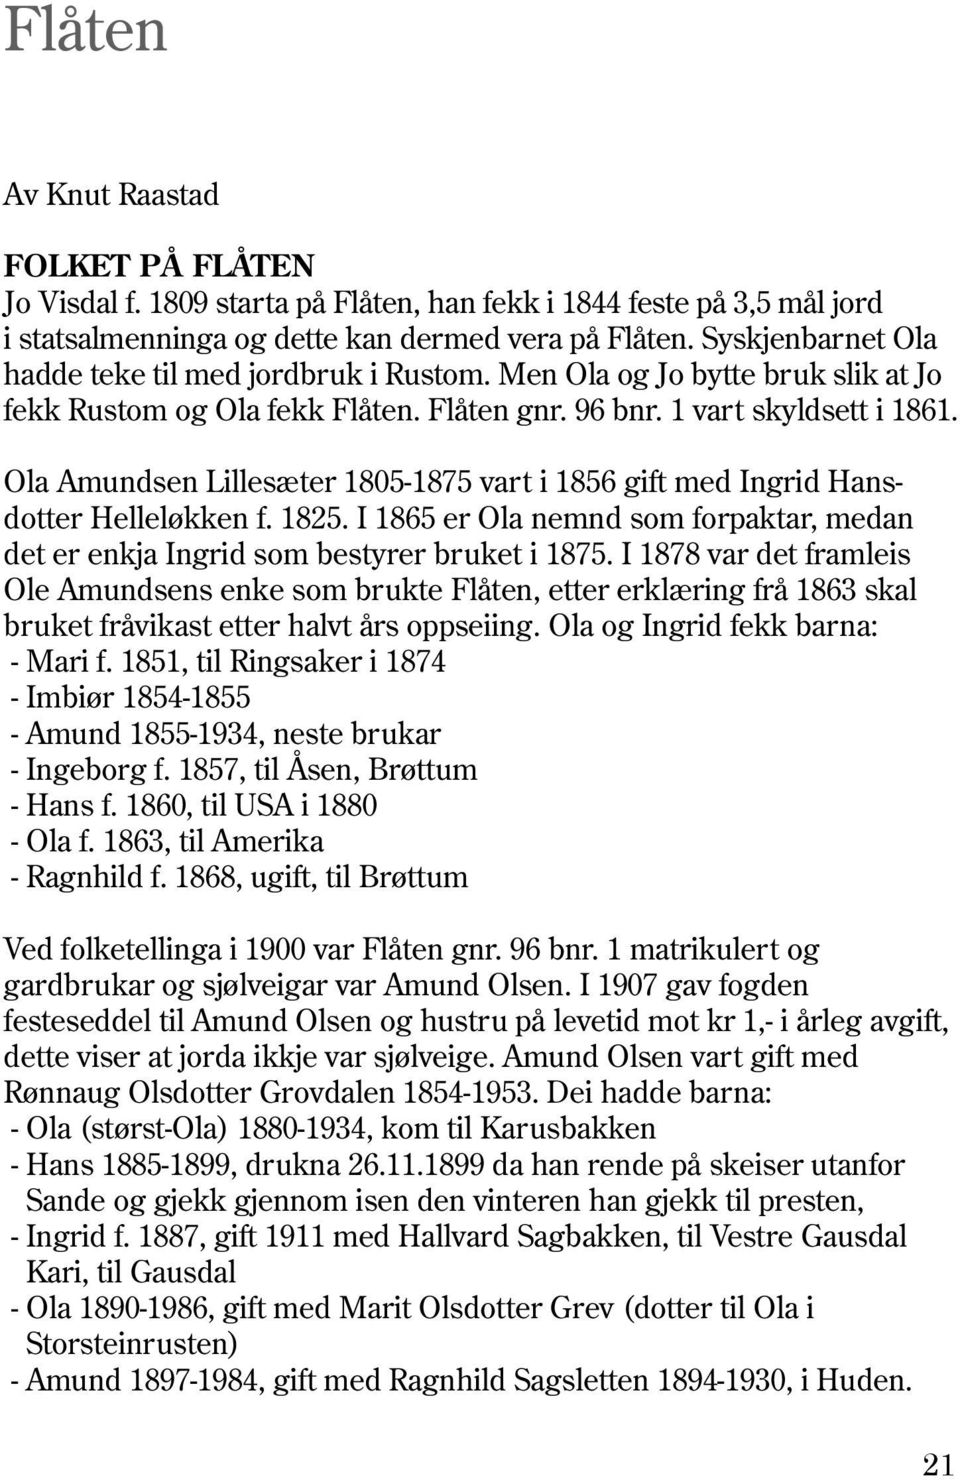 Ola Amundsen Lillesæter 1805-1875 vart i 1856 gift med Ingrid Hansdotter Helleløkken f. 1825. I 1865 er Ola nemnd som forpaktar, medan det er enkja Ingrid som bestyrer bruket i 1875.